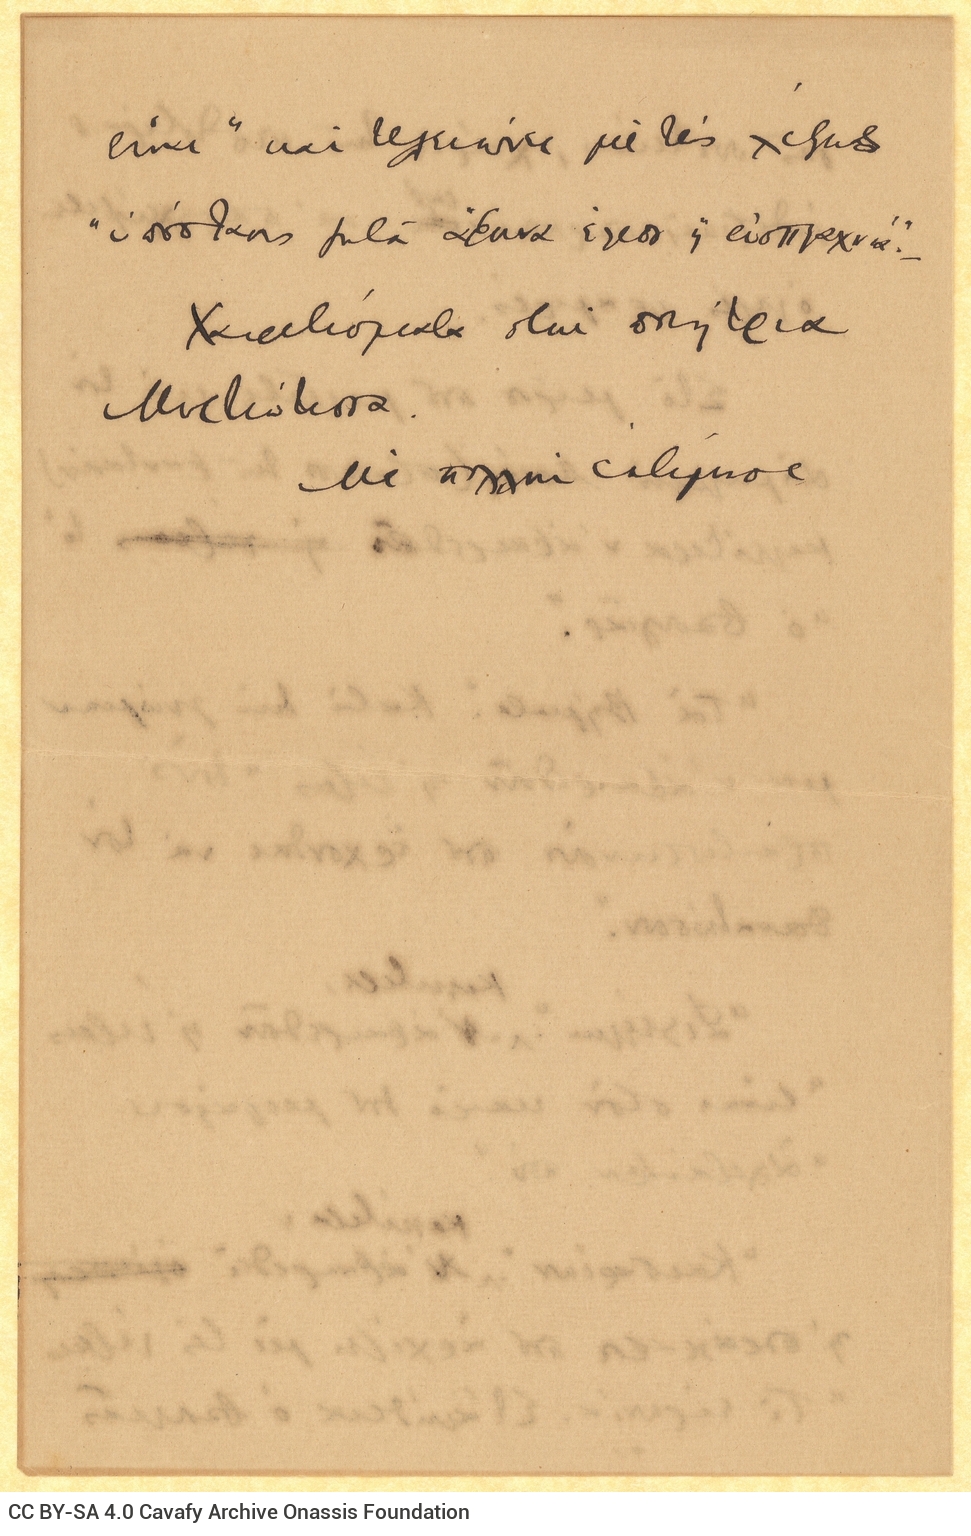 Χειρόγραφο σχέδιο επιστολής του Καβάφη προς τον Τέλλο Άγρα, στην πρώ